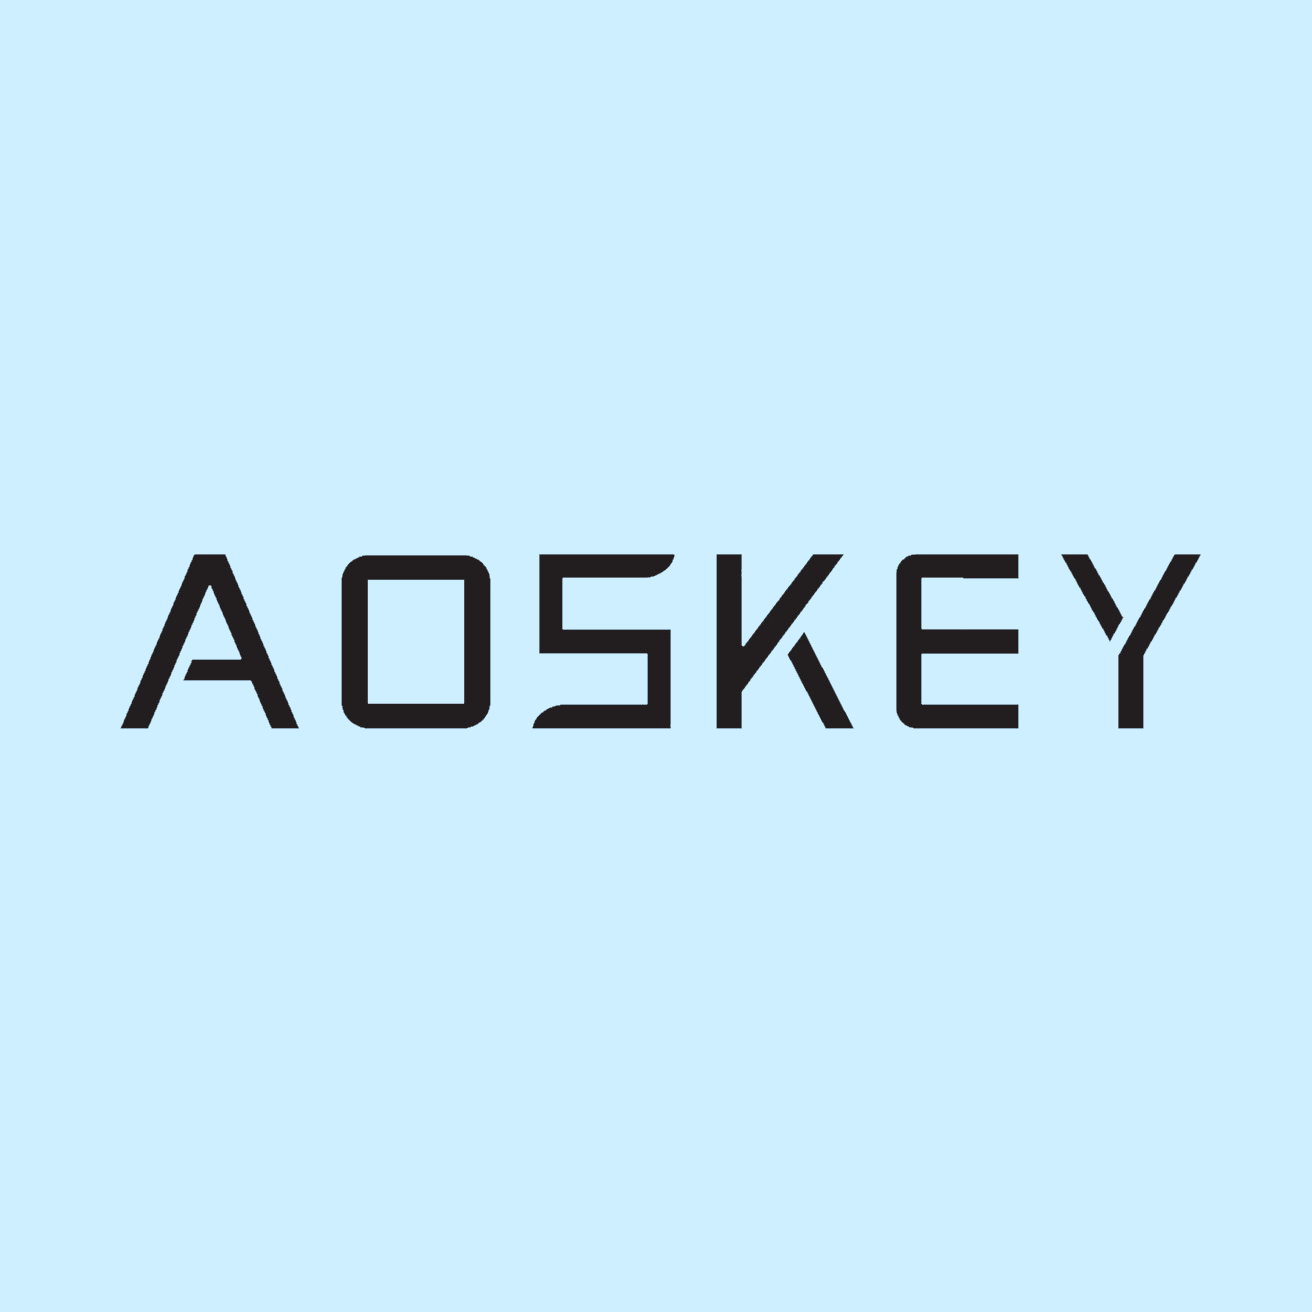 Aoskey